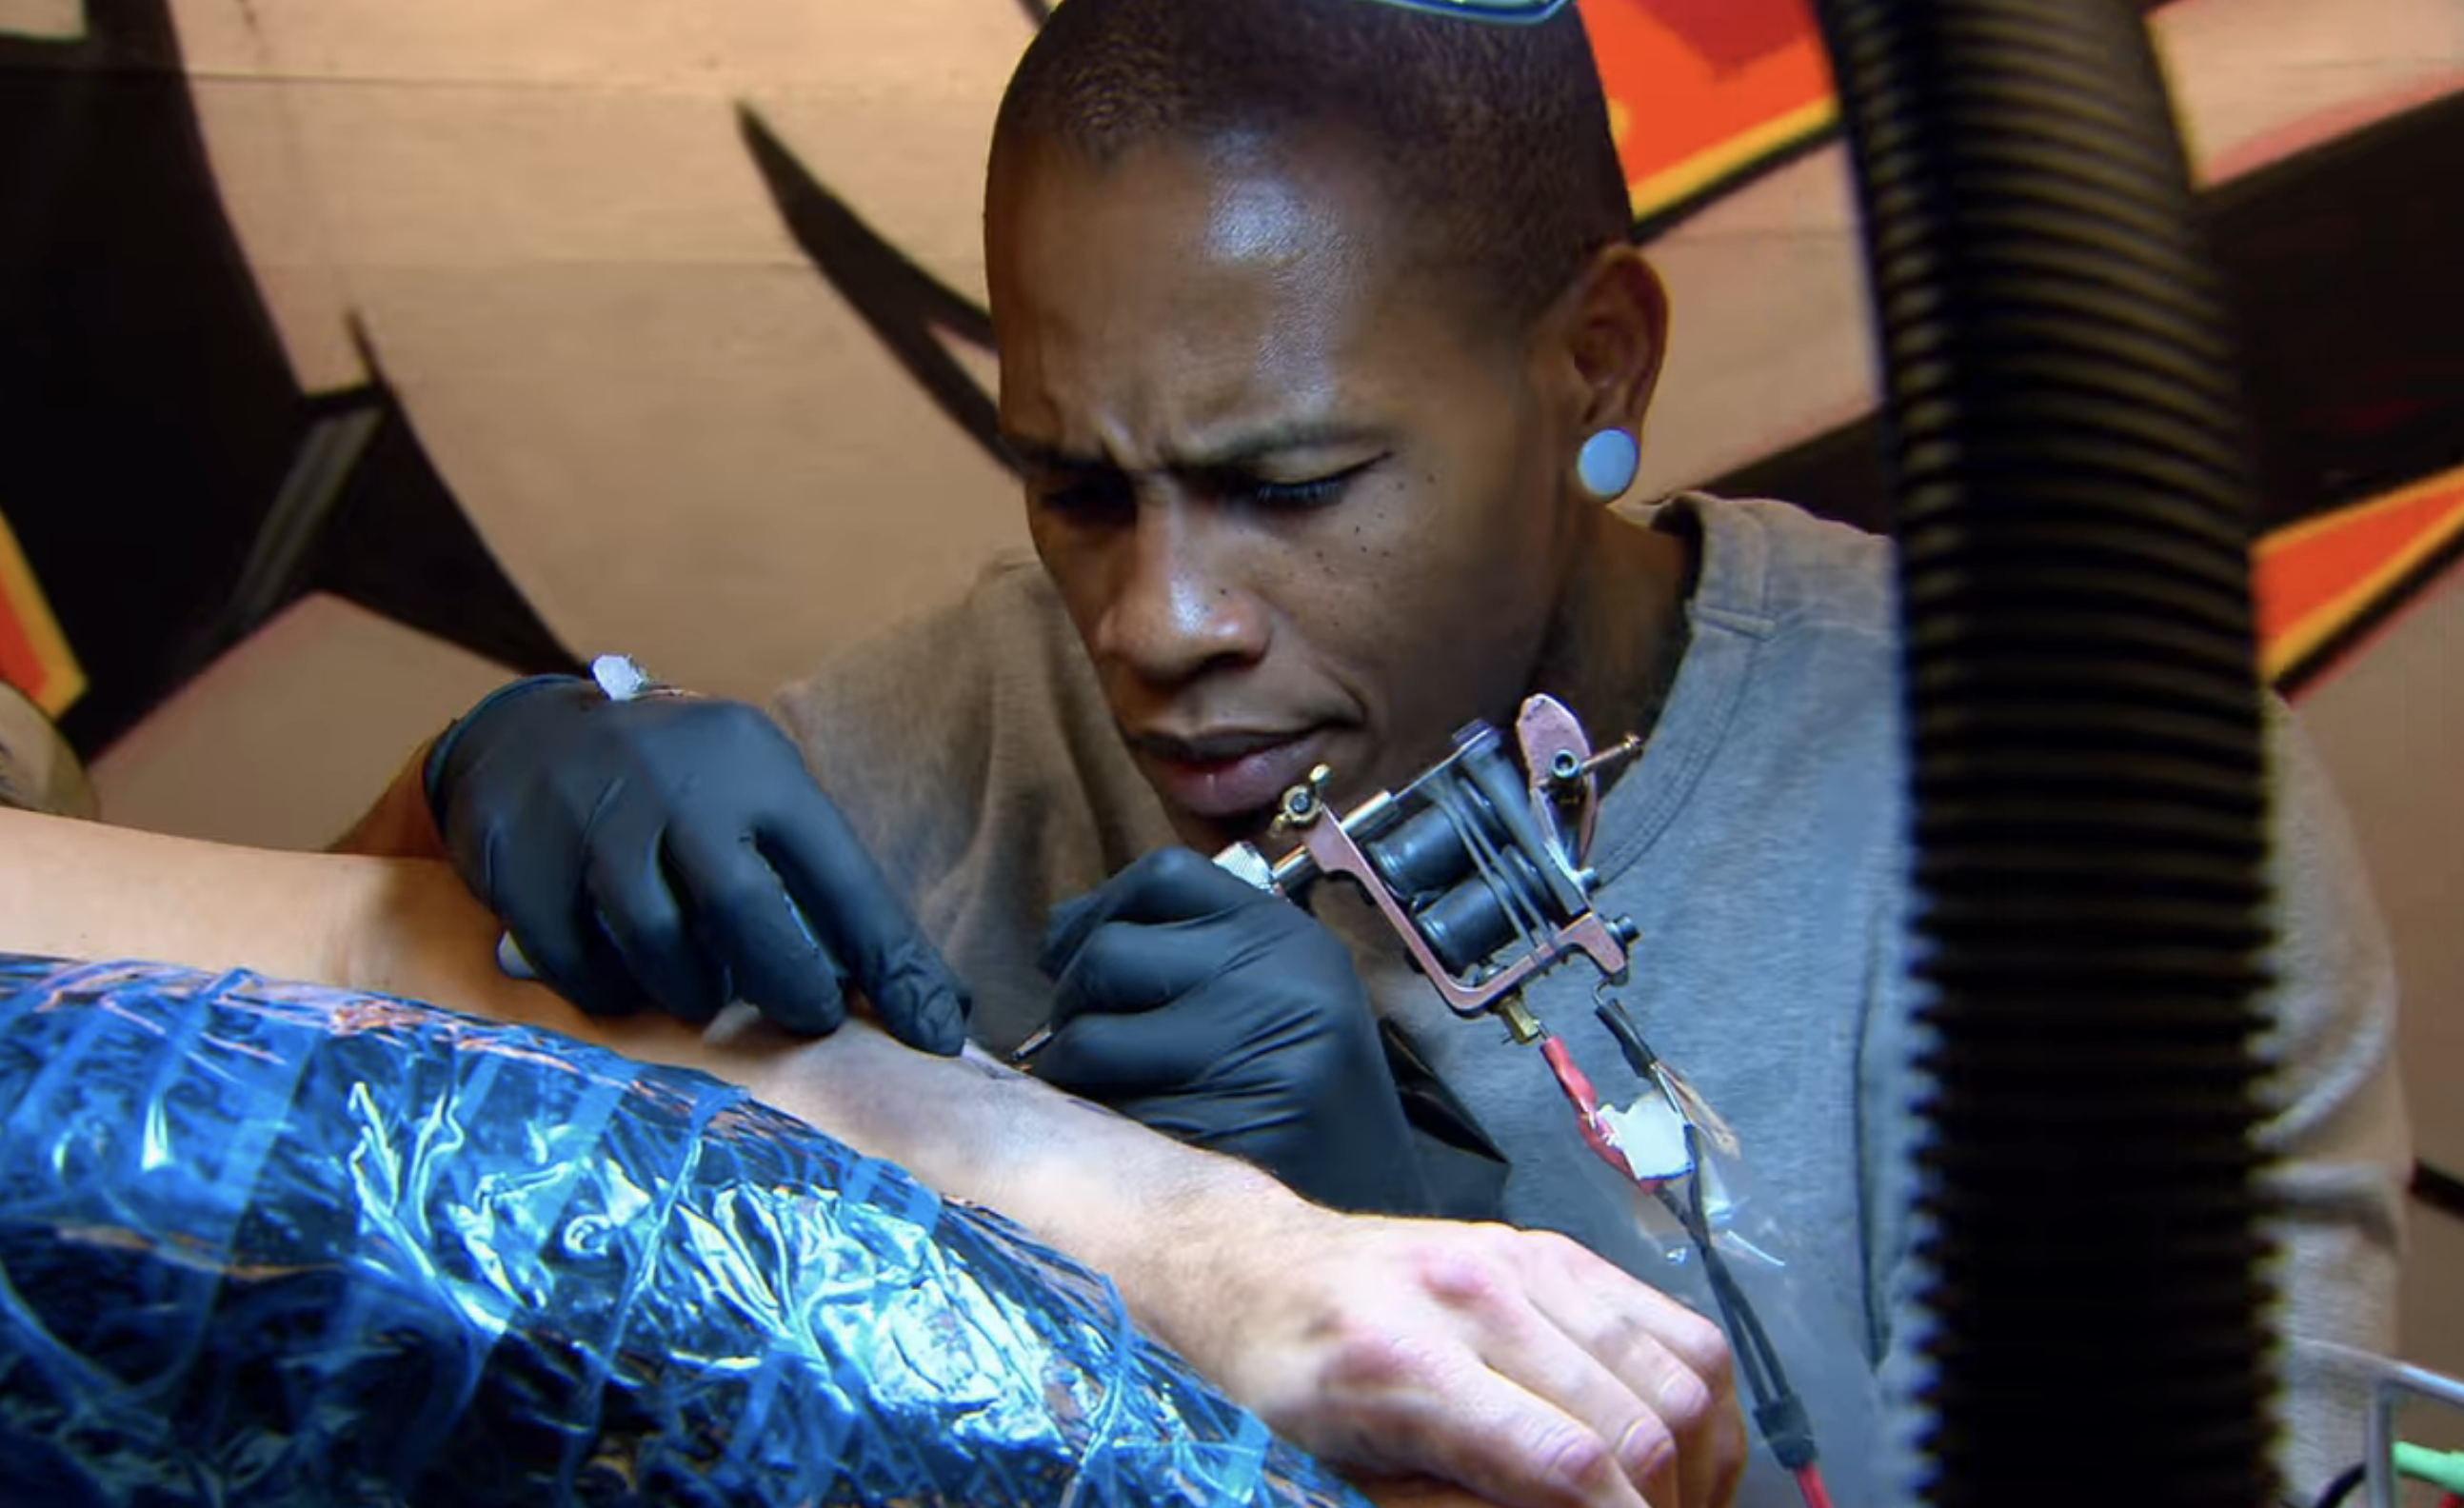 A tattoo artist working